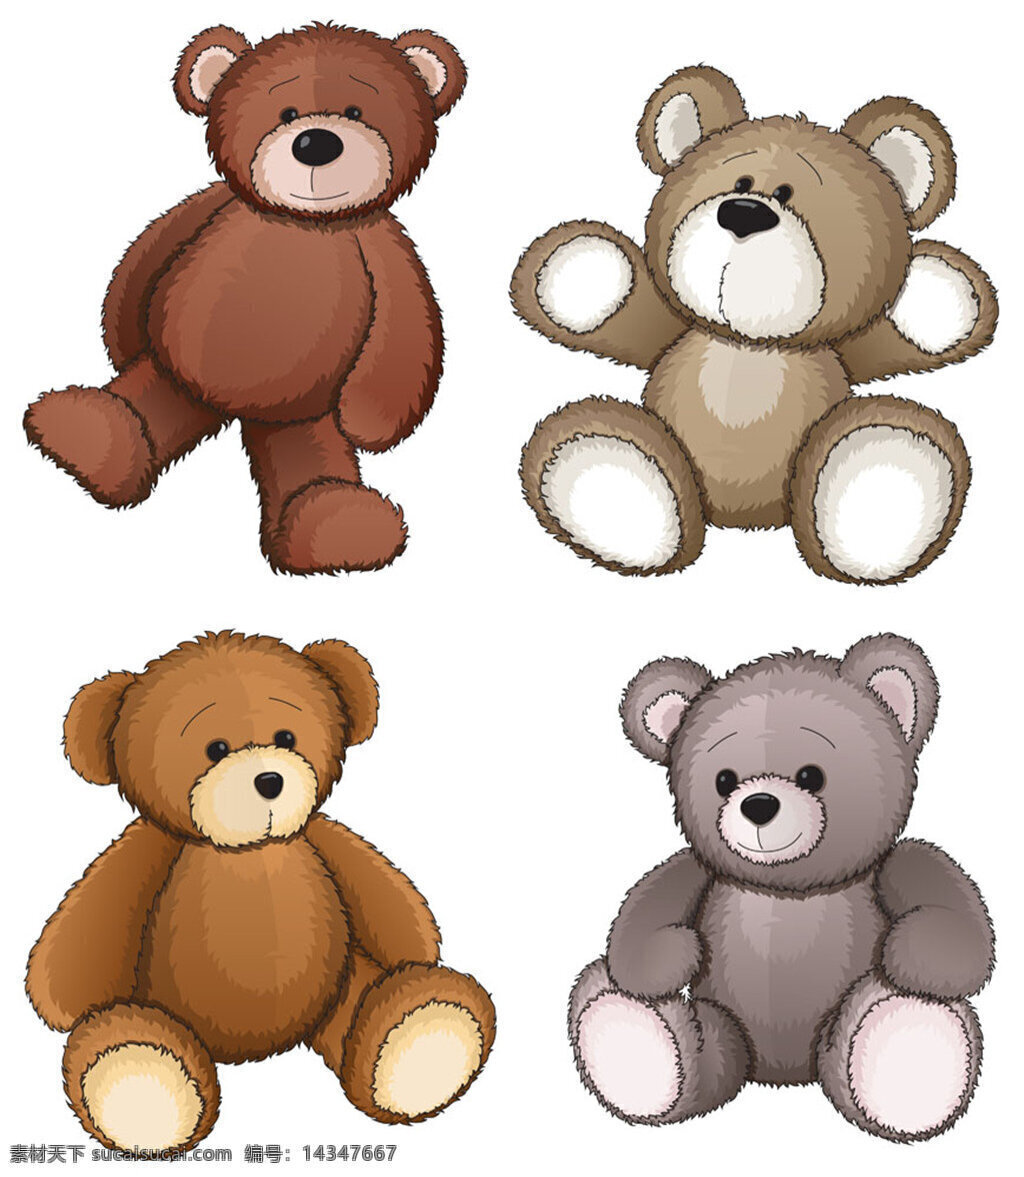 黄色灰色小熊 小熊矢量图片 黄色 灰色 卡通熊 小熊熊 玩具熊 陆地动物 卡通动物 动物漫画 生活百科 矢量素材